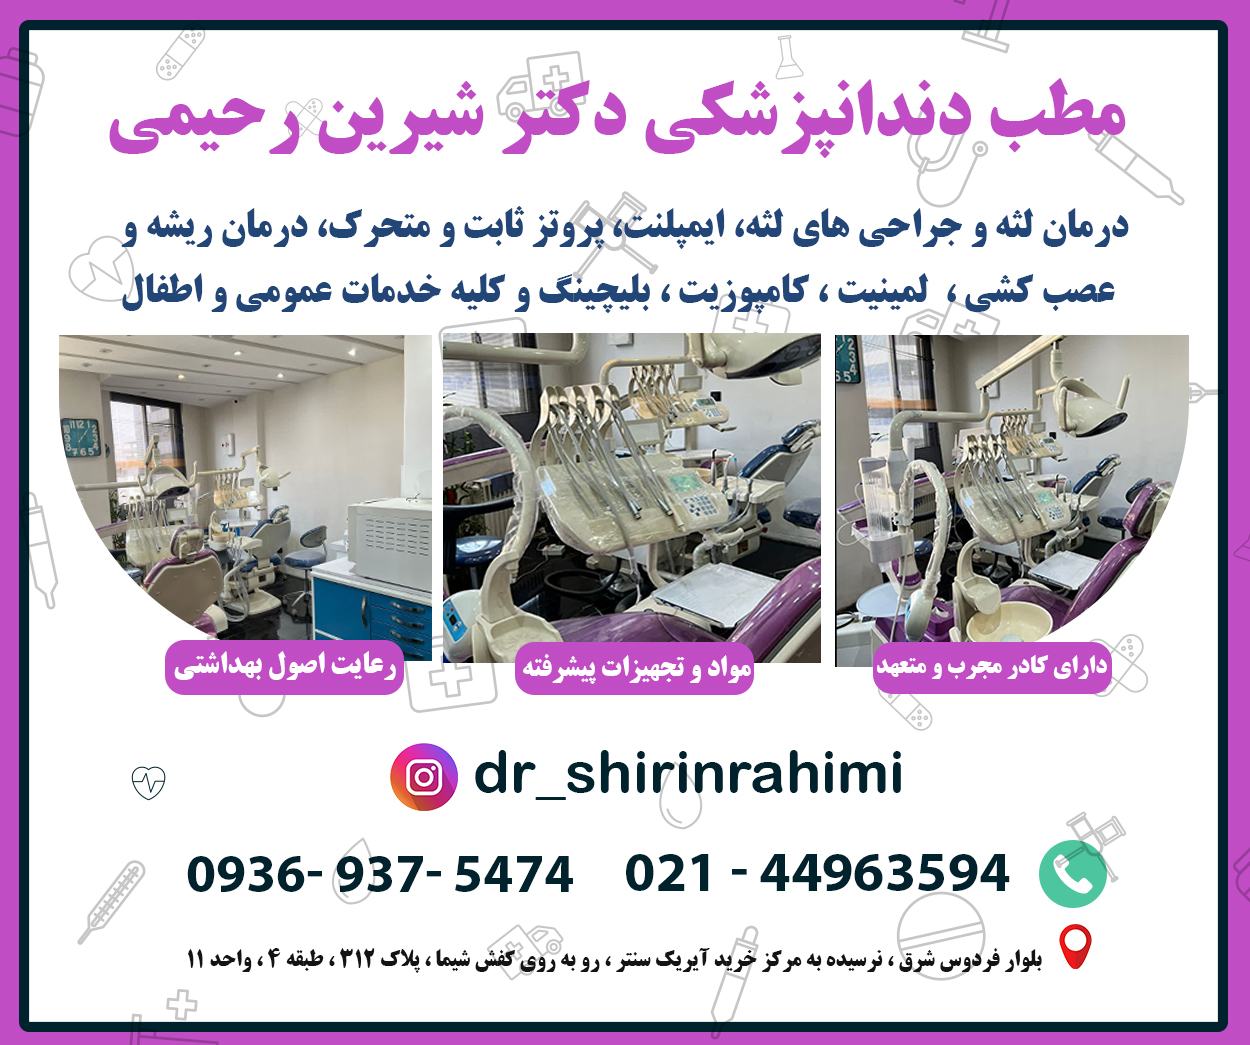 مراکز طرف قرارداد امیدان سلامت - دکتر رحیمی تهران